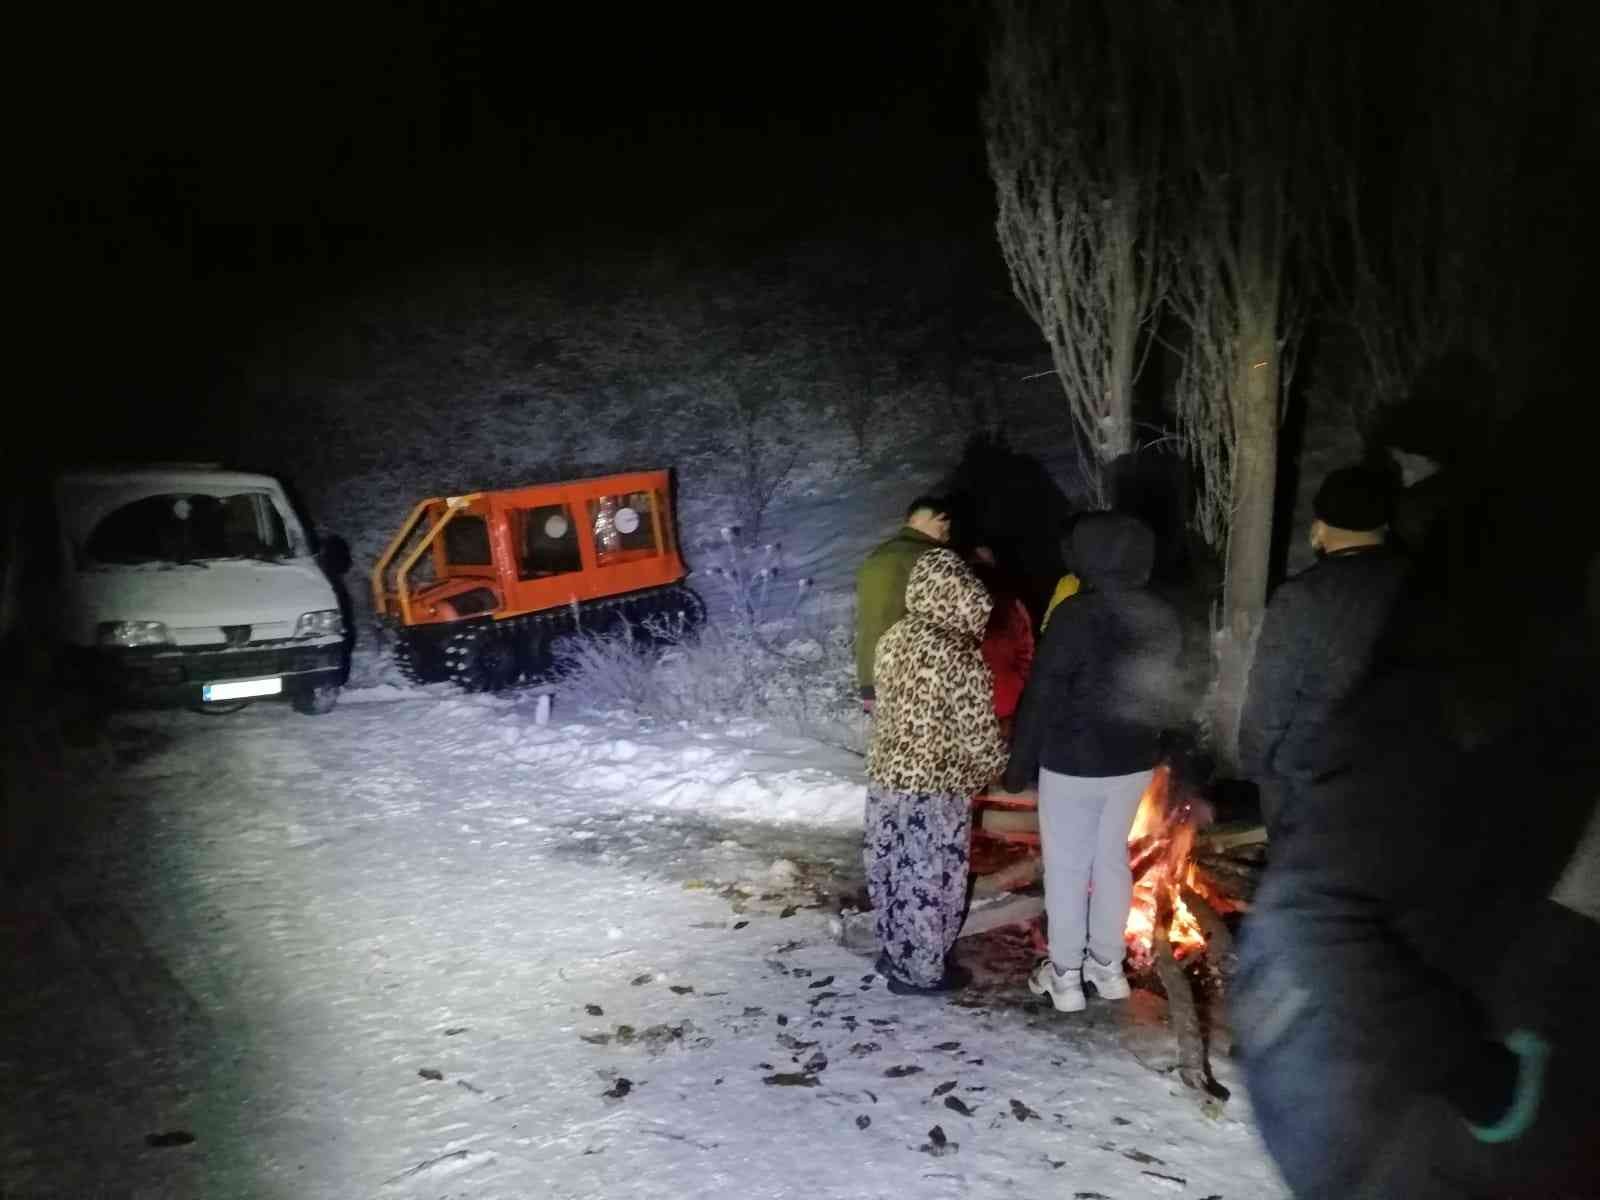 Aydın’ın yüksek kesimlerinde bir grup vatandaş karda mahsur kaldı #aydin